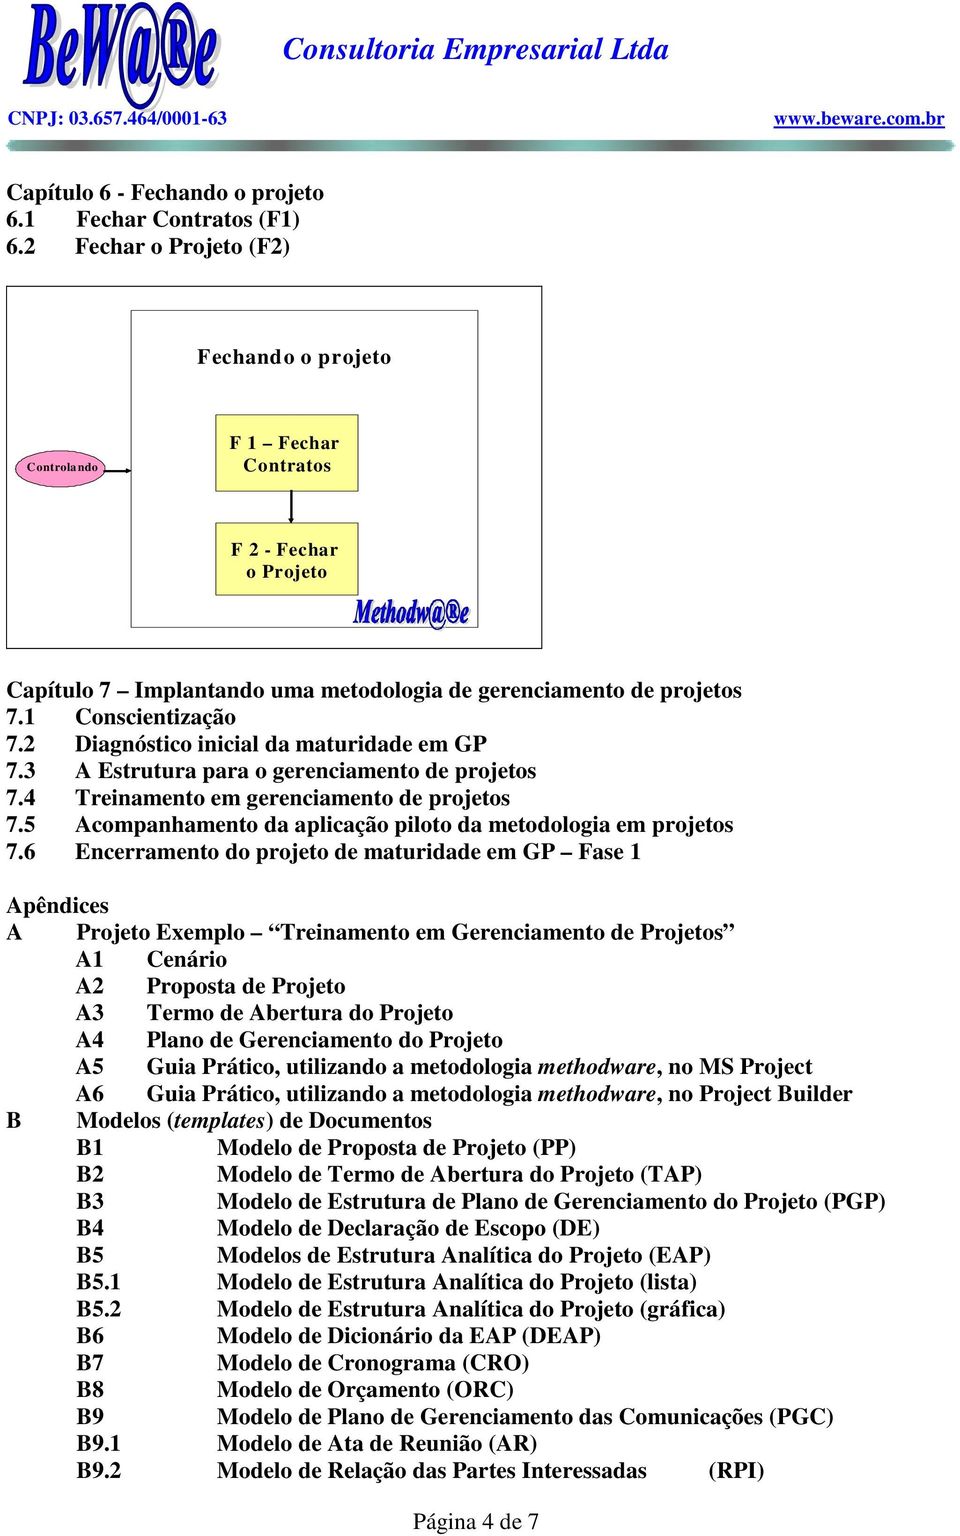 2 Diagnóstico inicial da maturidade em GP 7.3 A Estrutura para o gerenciamento de projetos 7.4 Treinamento em gerenciamento de projetos 7.